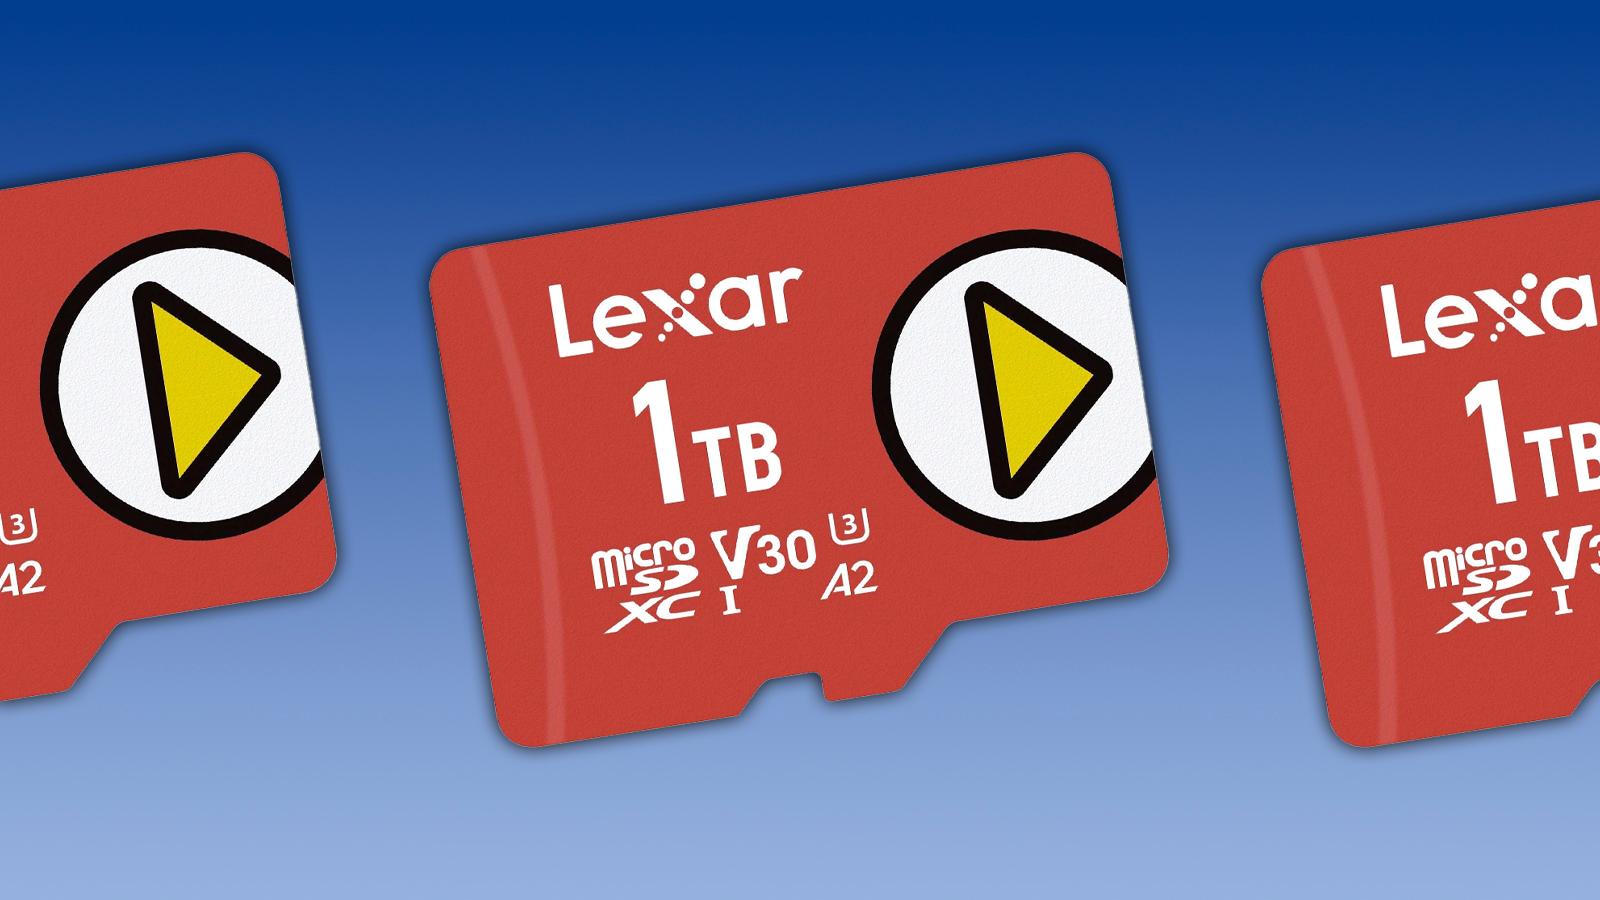 lexar microsd card on a blue background